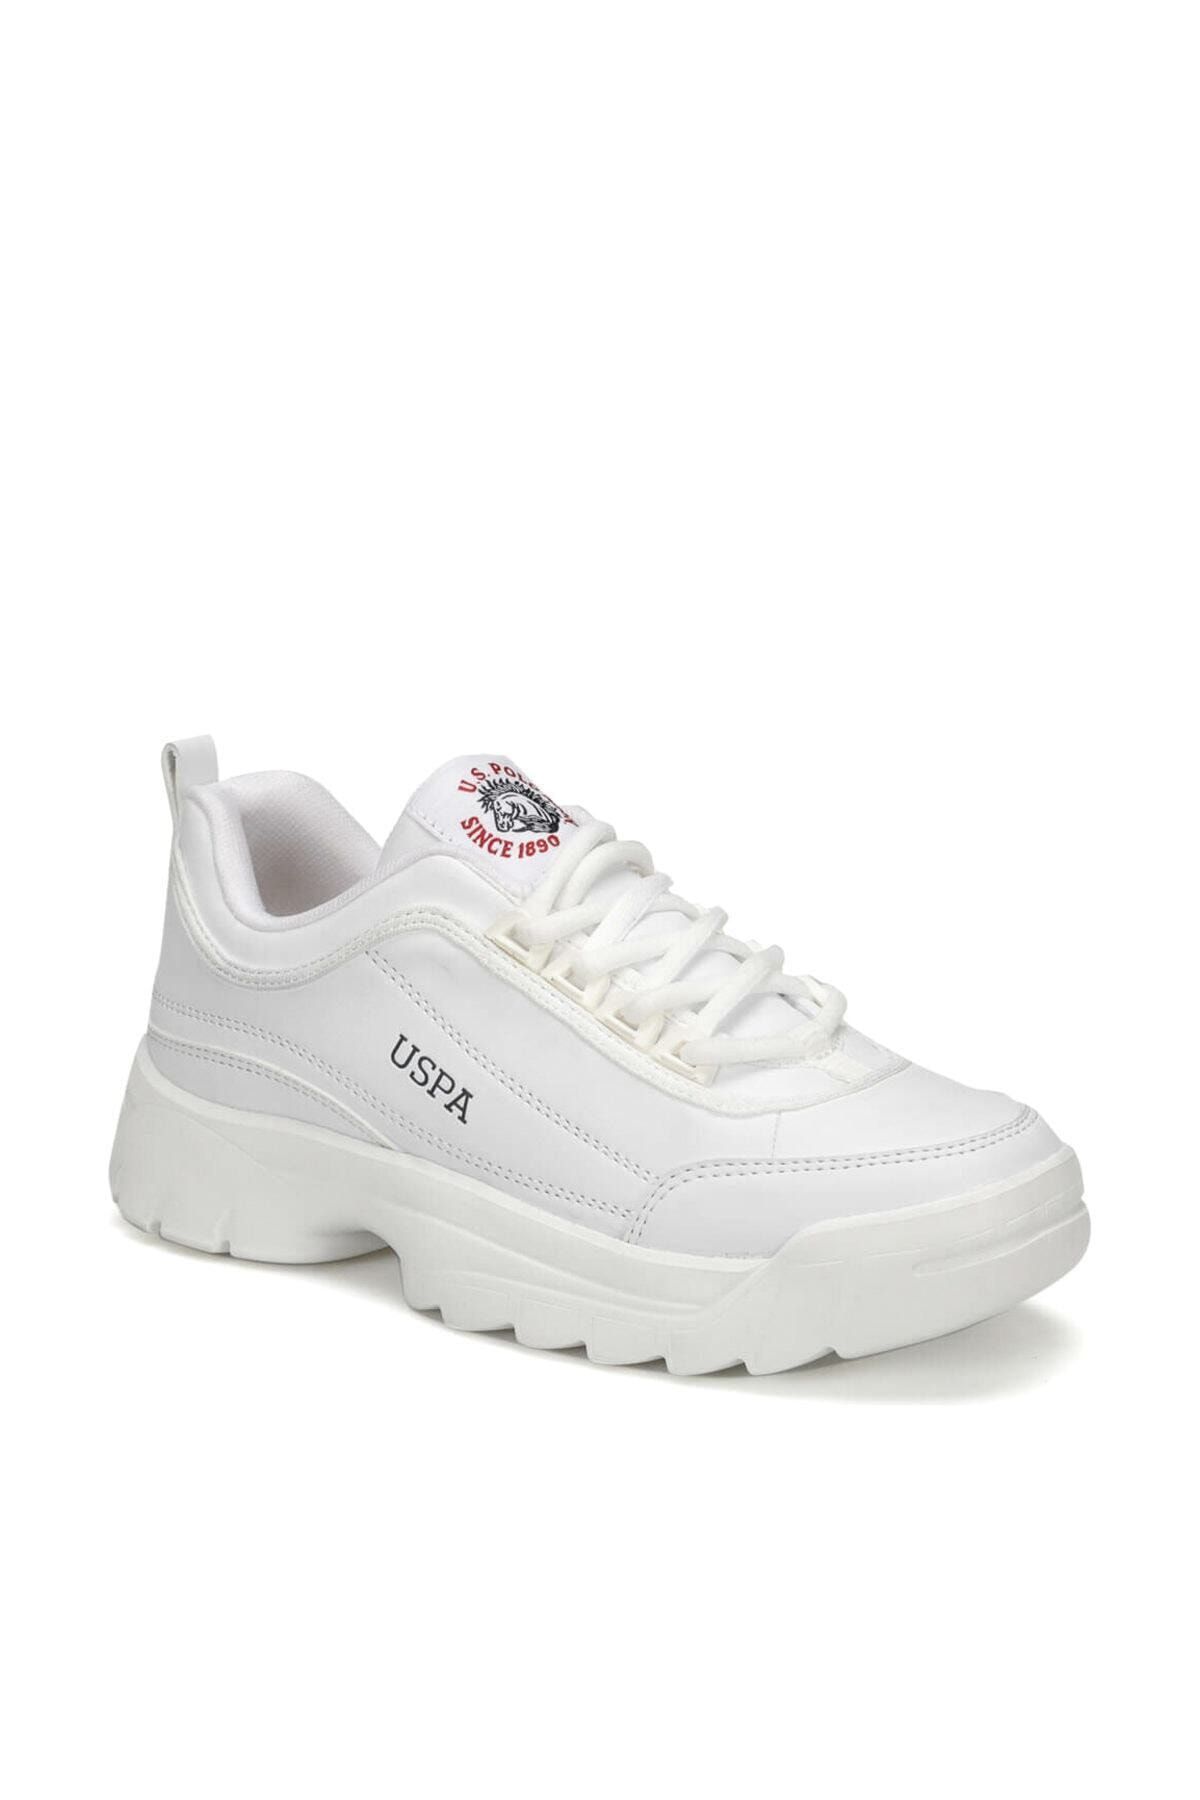 U.S. Polo Assn. MEIKO 9PR Beyaz Kadın Sneaker Ayakkabı 100418022